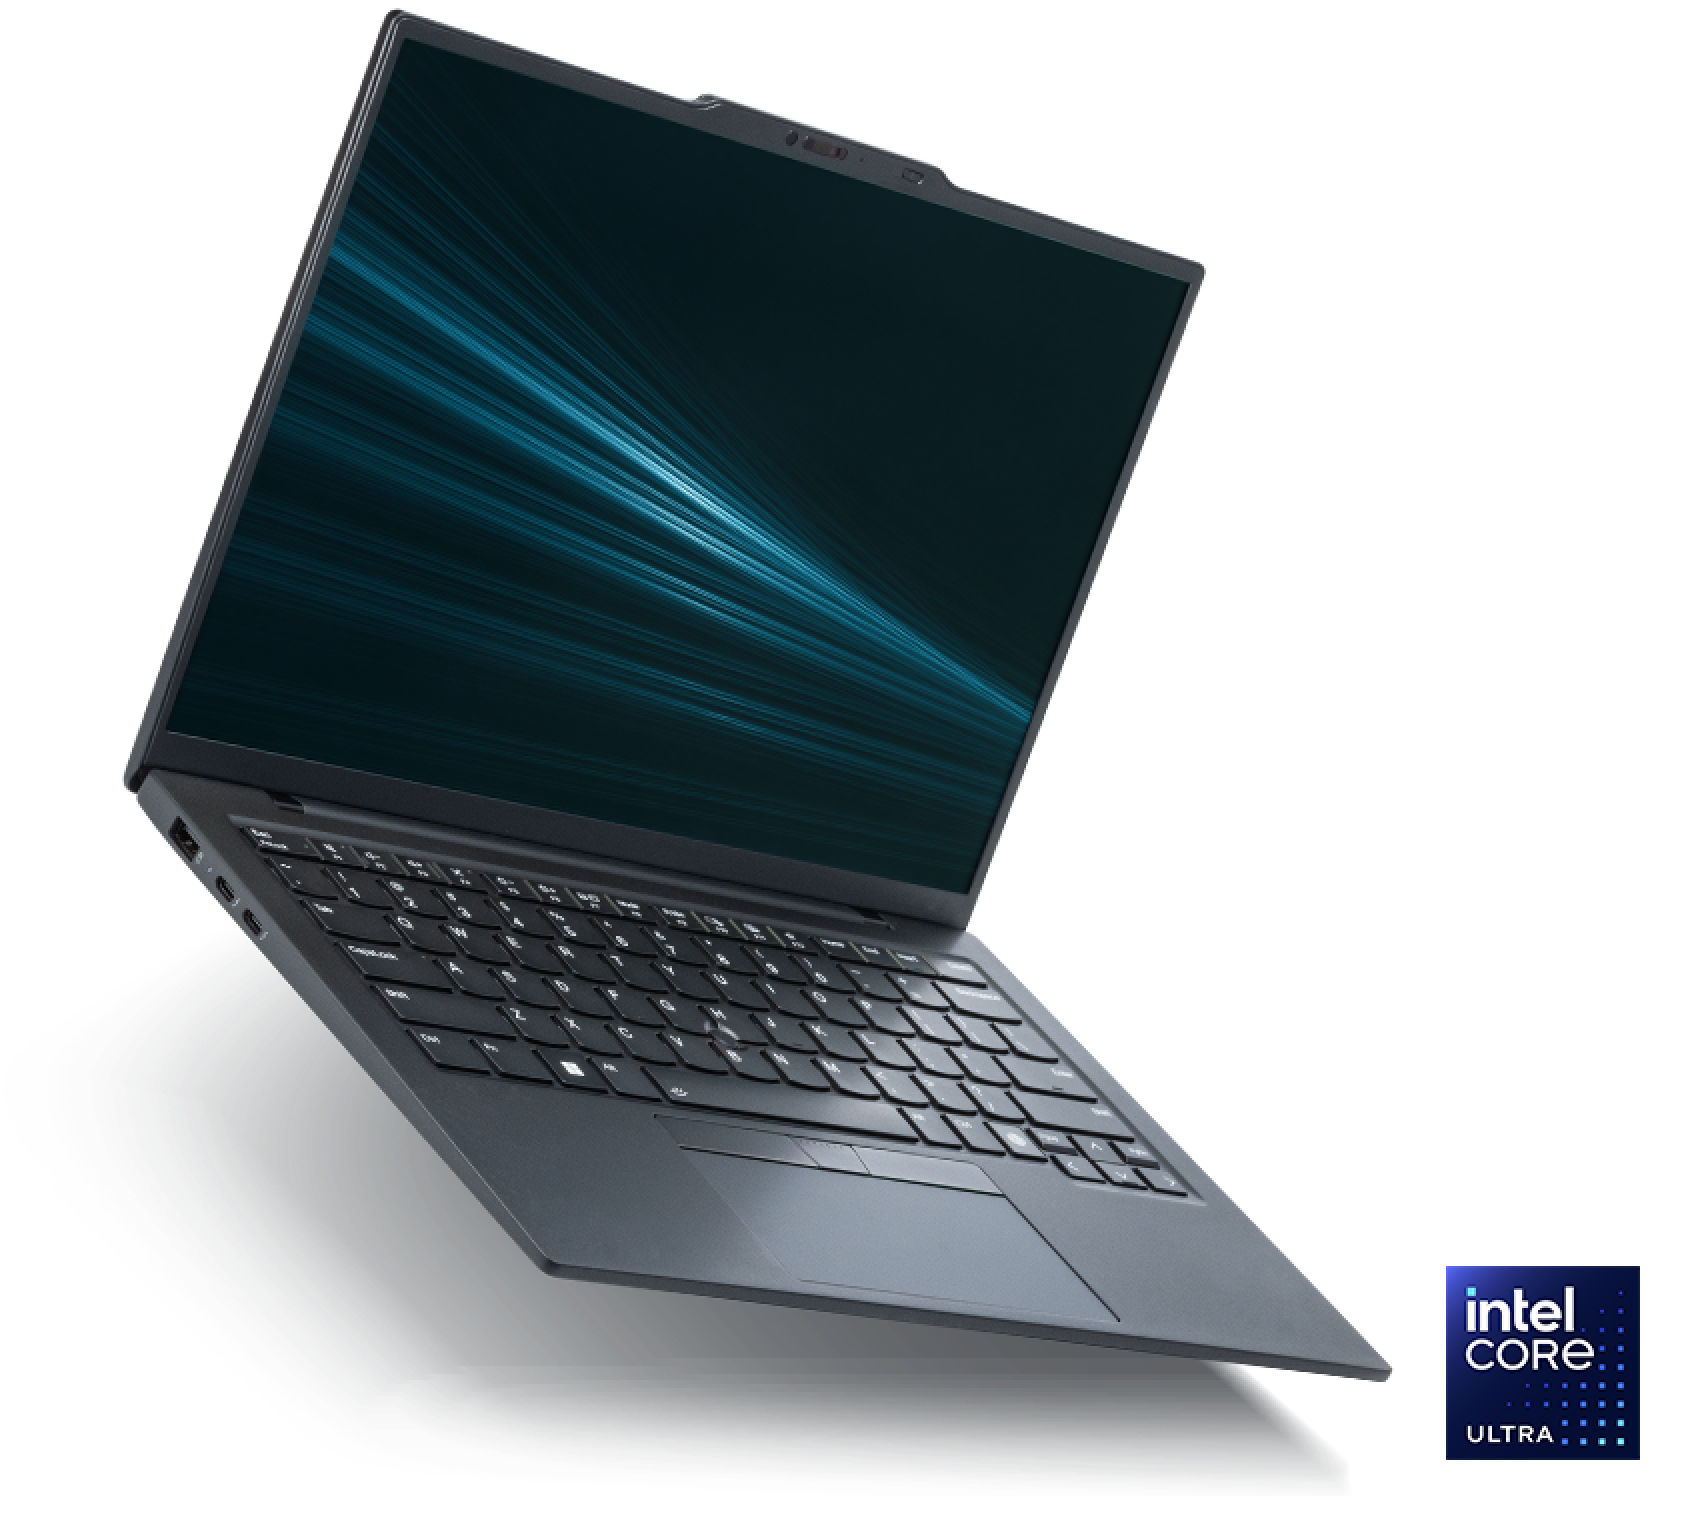 O notebook Edição Intel Evo equipado com um processador Intel Core Ultra.